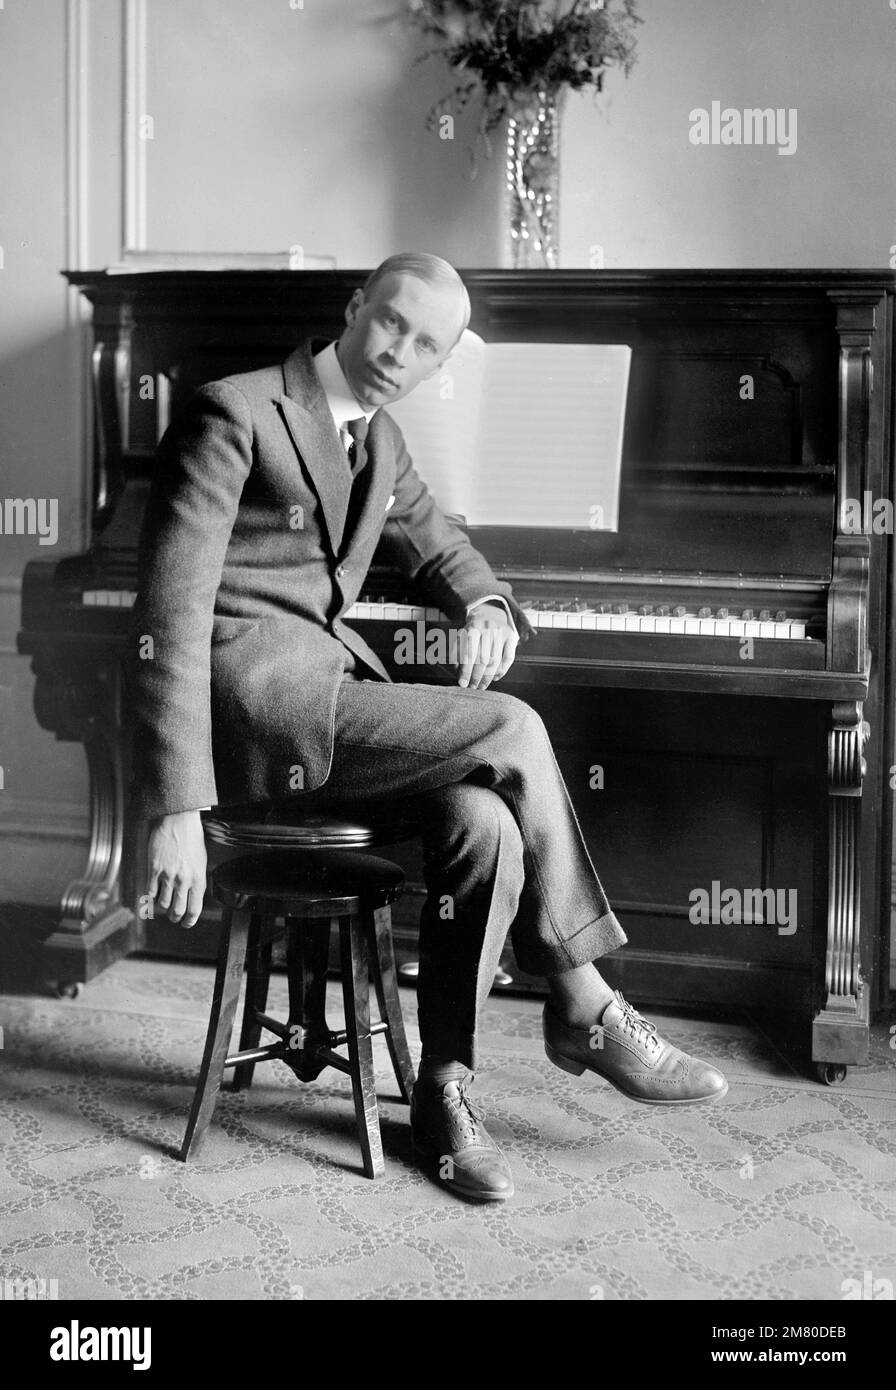 Sergei Prokofiev. Portrait du compositeur, pianiste et chef d'orchestre russe, Sergei Sergueïevitch Prokofiev (1891-1953), photo de bains News Service, c. 1918-1920 Banque D'Images